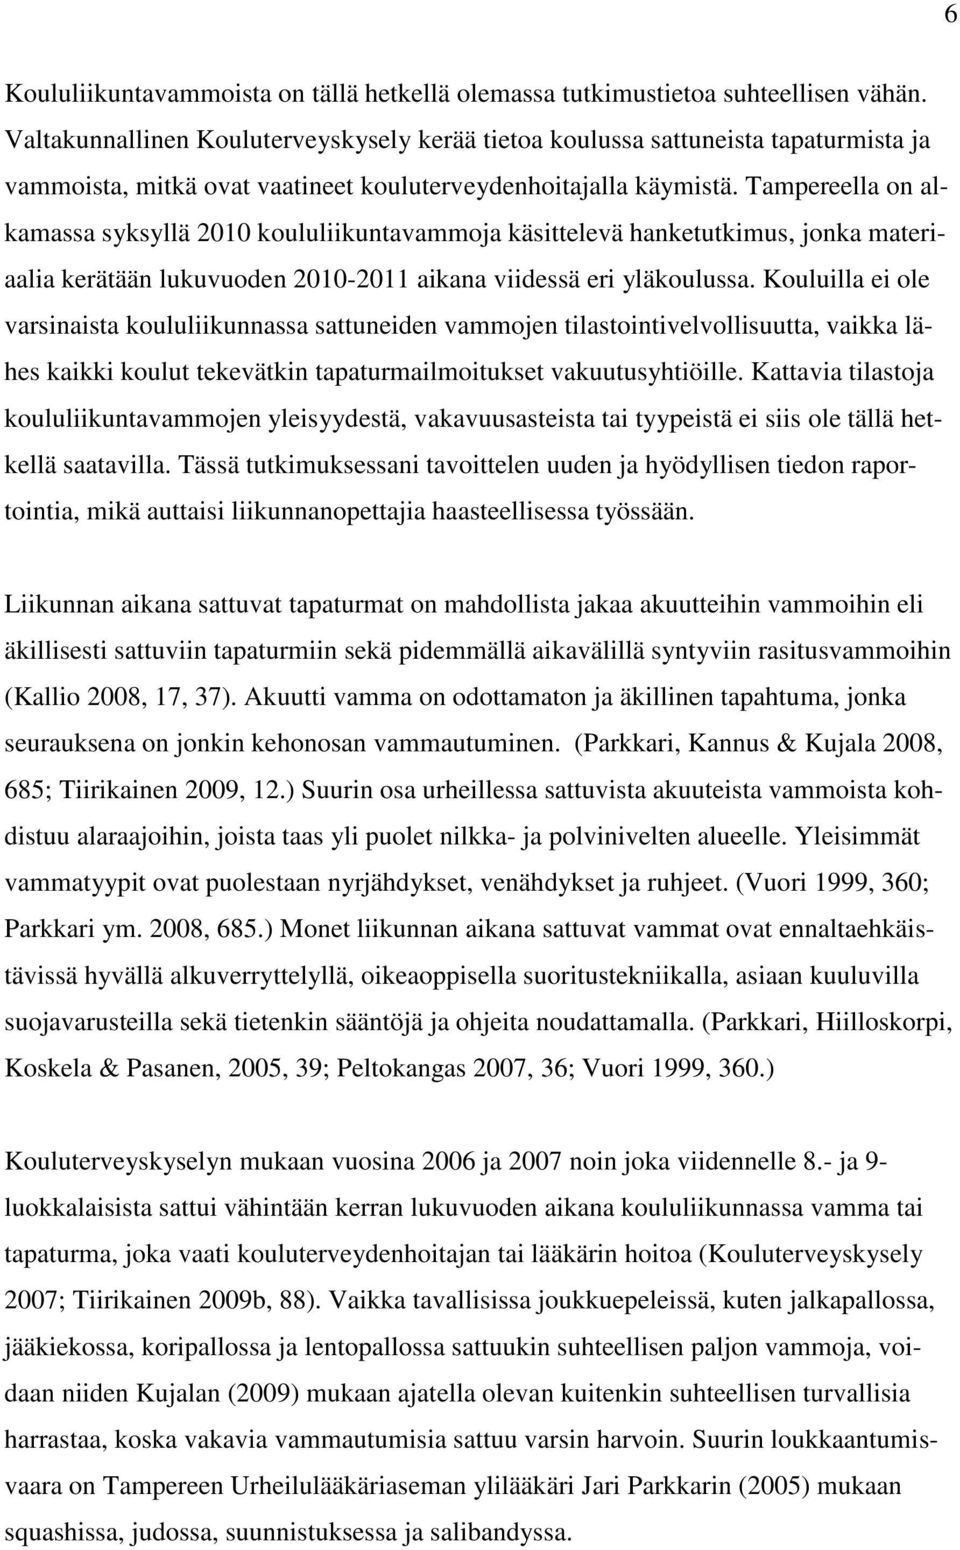 Tampereella on alkamassa syksyllä 2010 koululiikuntavammoja käsittelevä hanketutkimus, jonka materiaalia kerätään lukuvuoden 2010-2011 aikana viidessä eri yläkoulussa.